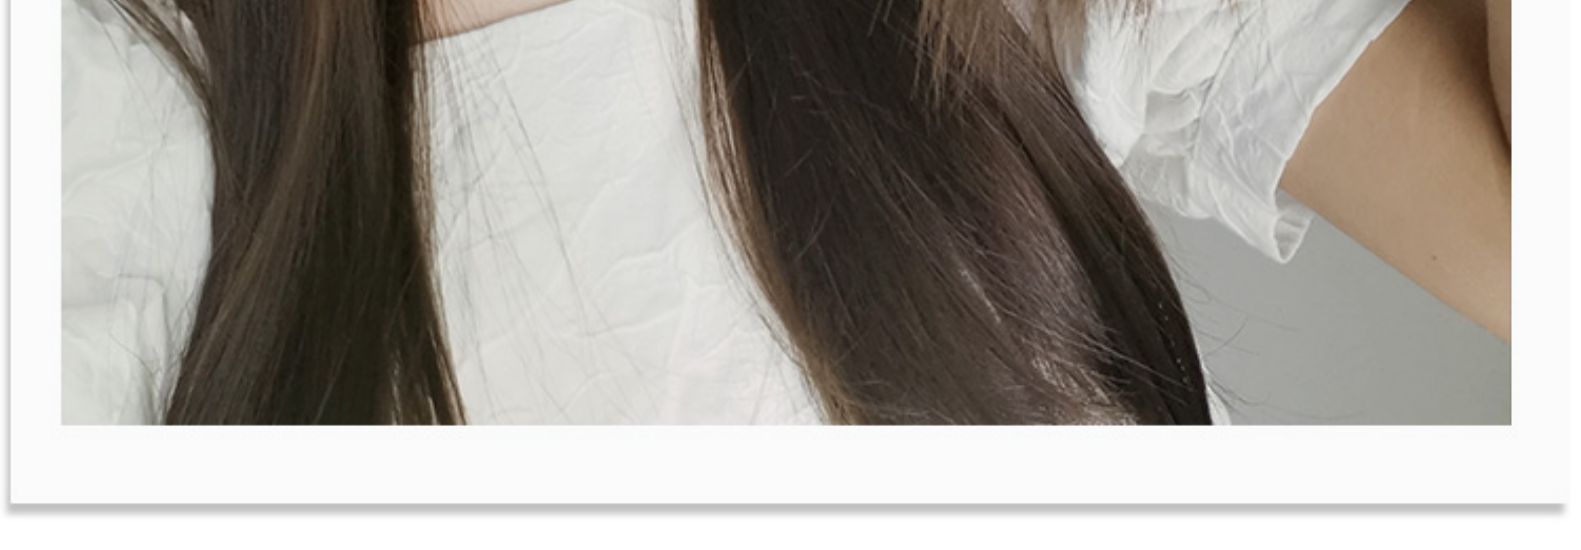 Pérruque et cheveux - Fil haute température - Ref 3437316 Image 7